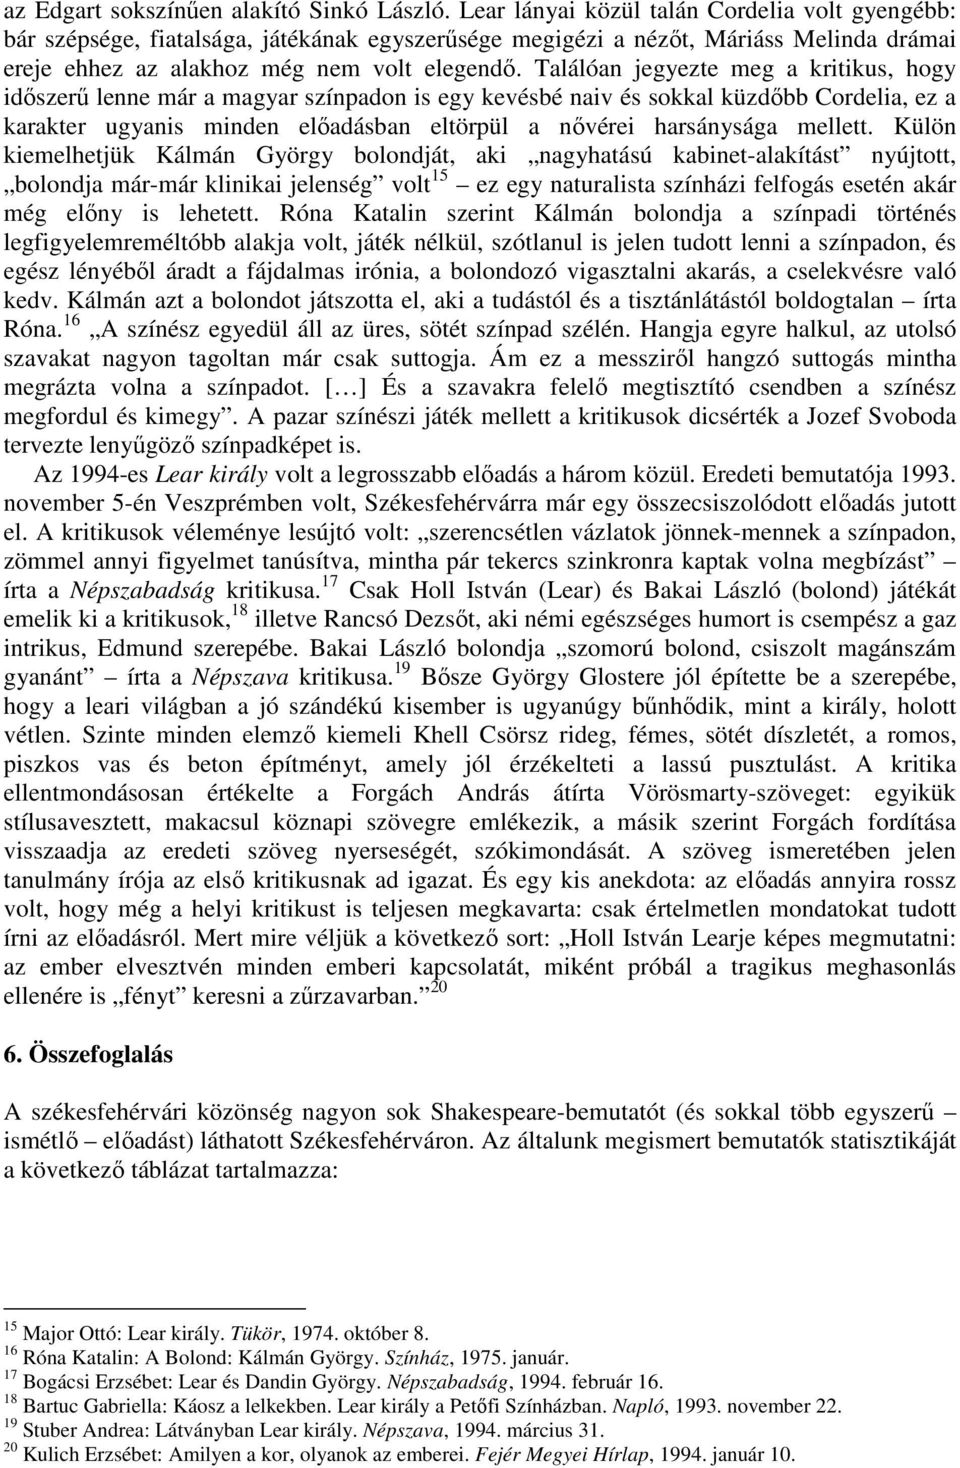 Dr. Szele Bálint, KJF, tudományos fımunkatárs: Shakespeare-bemutatók  Székesfehérváron 1 - PDF Ingyenes letöltés